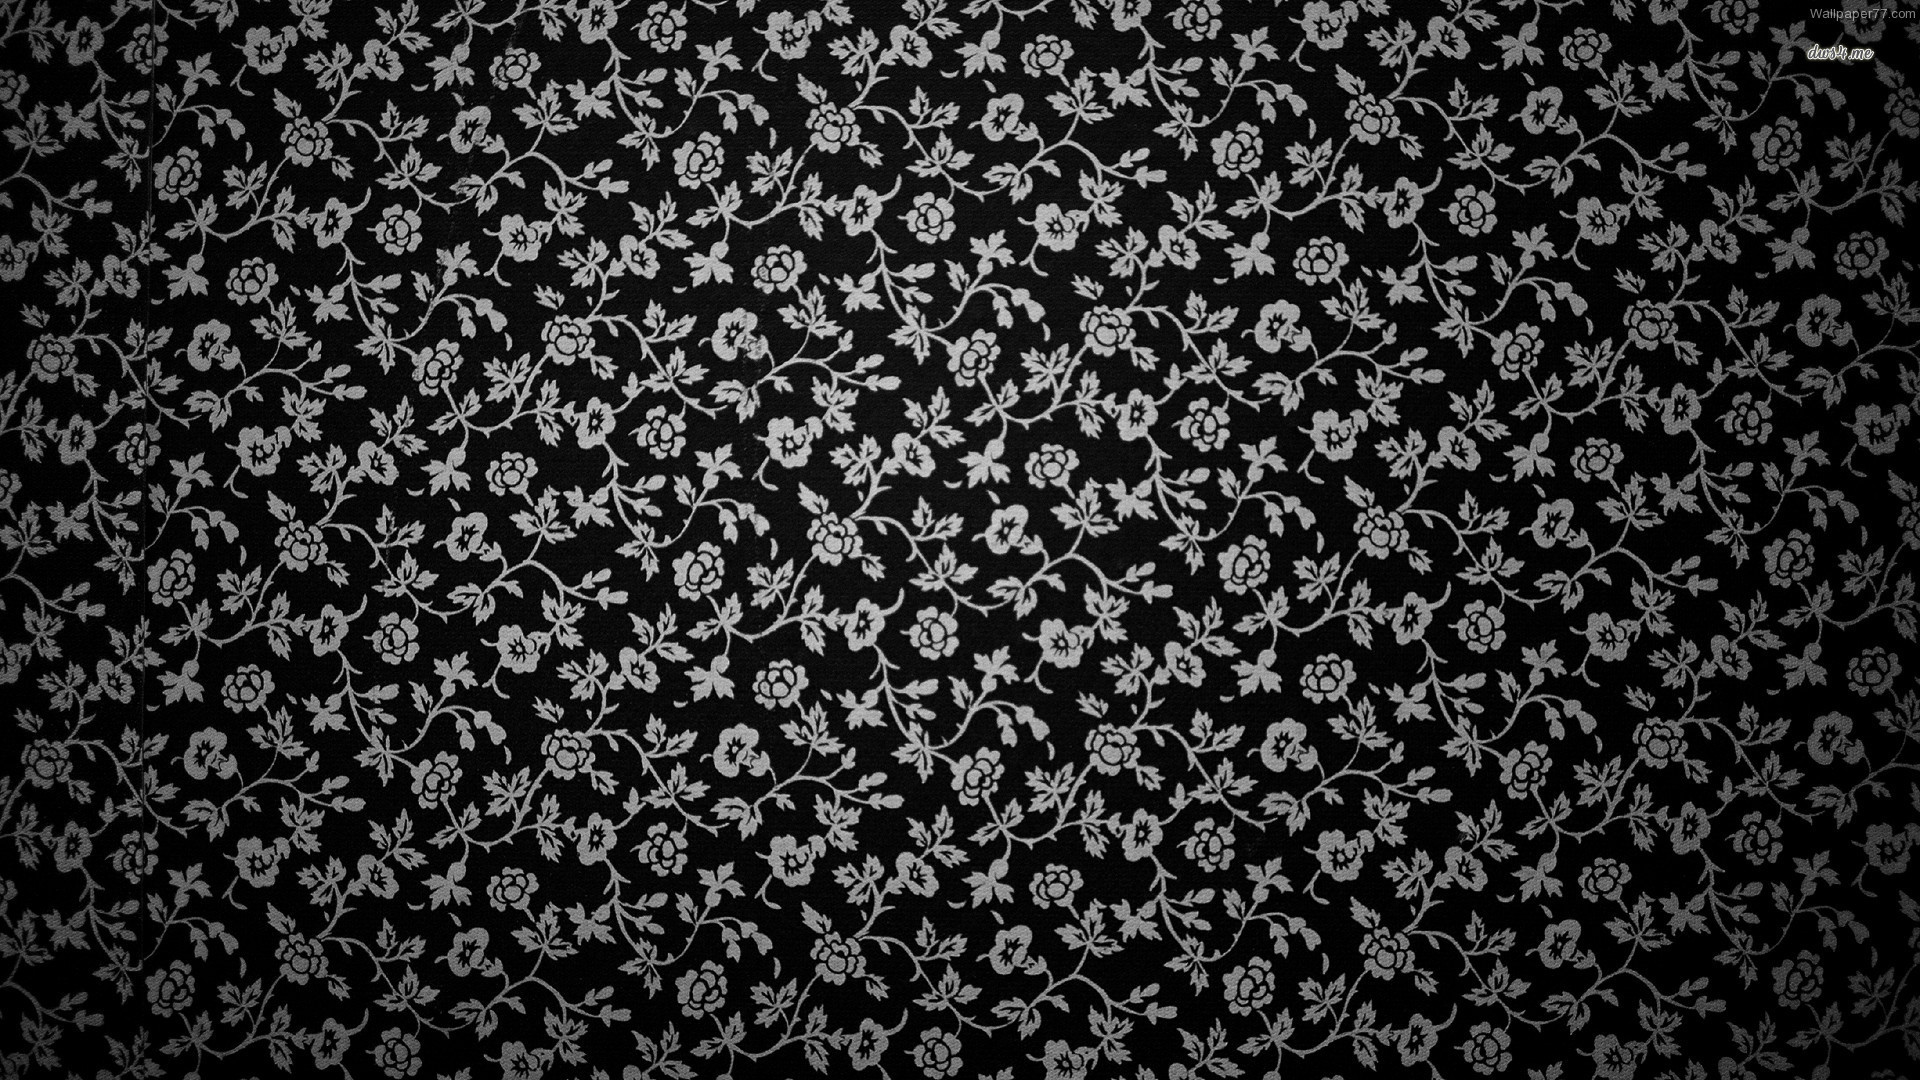 ... Floral Wall Pattern wallpaper 1920x1080 ...